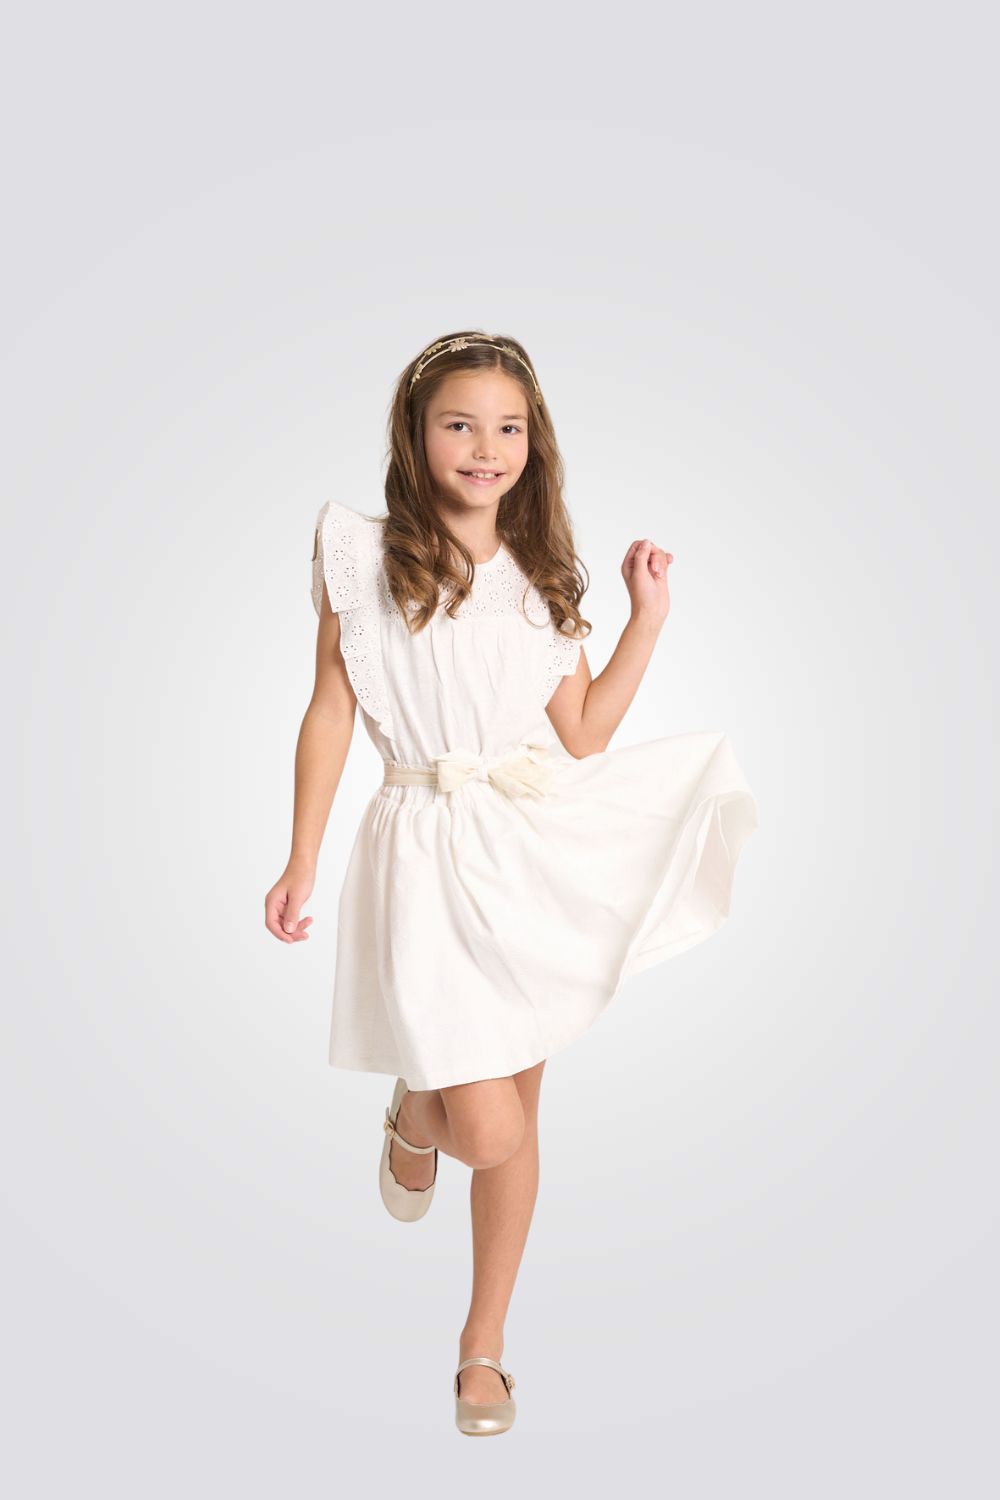 חצאית לילדות בצבע לבן עם סרט קשירה